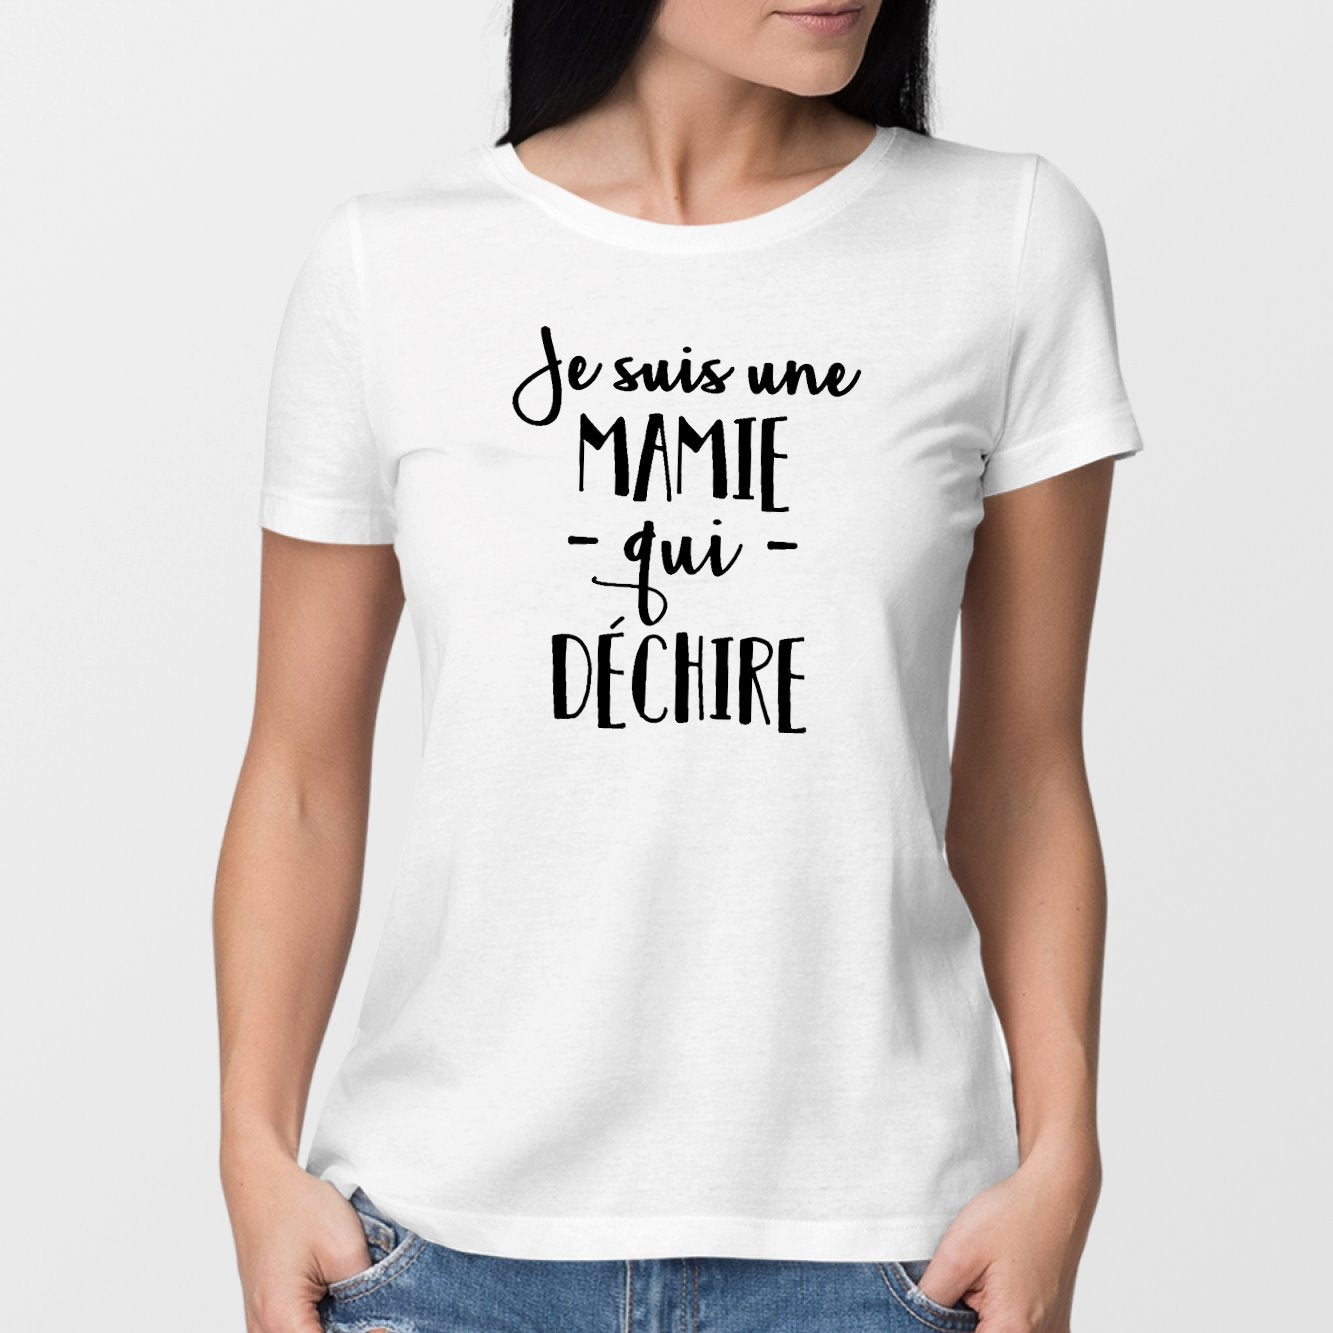 Tee Shirt Humour Femme - T-Shirt Femme Humoristique